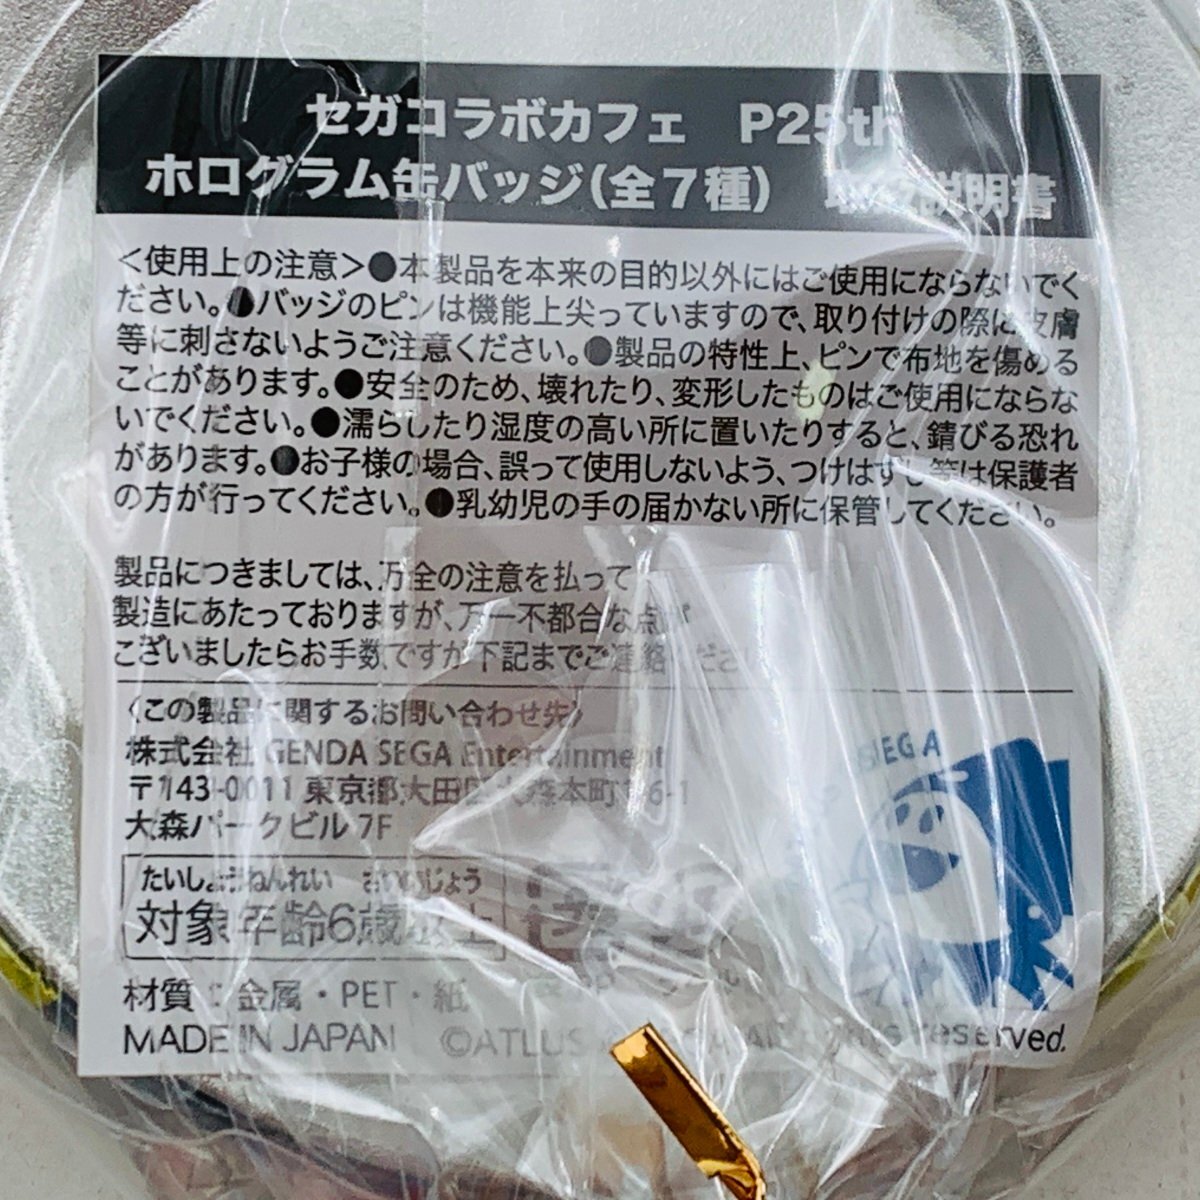  новый товар нераспечатанный Persona PERSONA Sega сотрудничество Cafe P25th тент грамм жестяная банка значок P4. человек .. сверху .